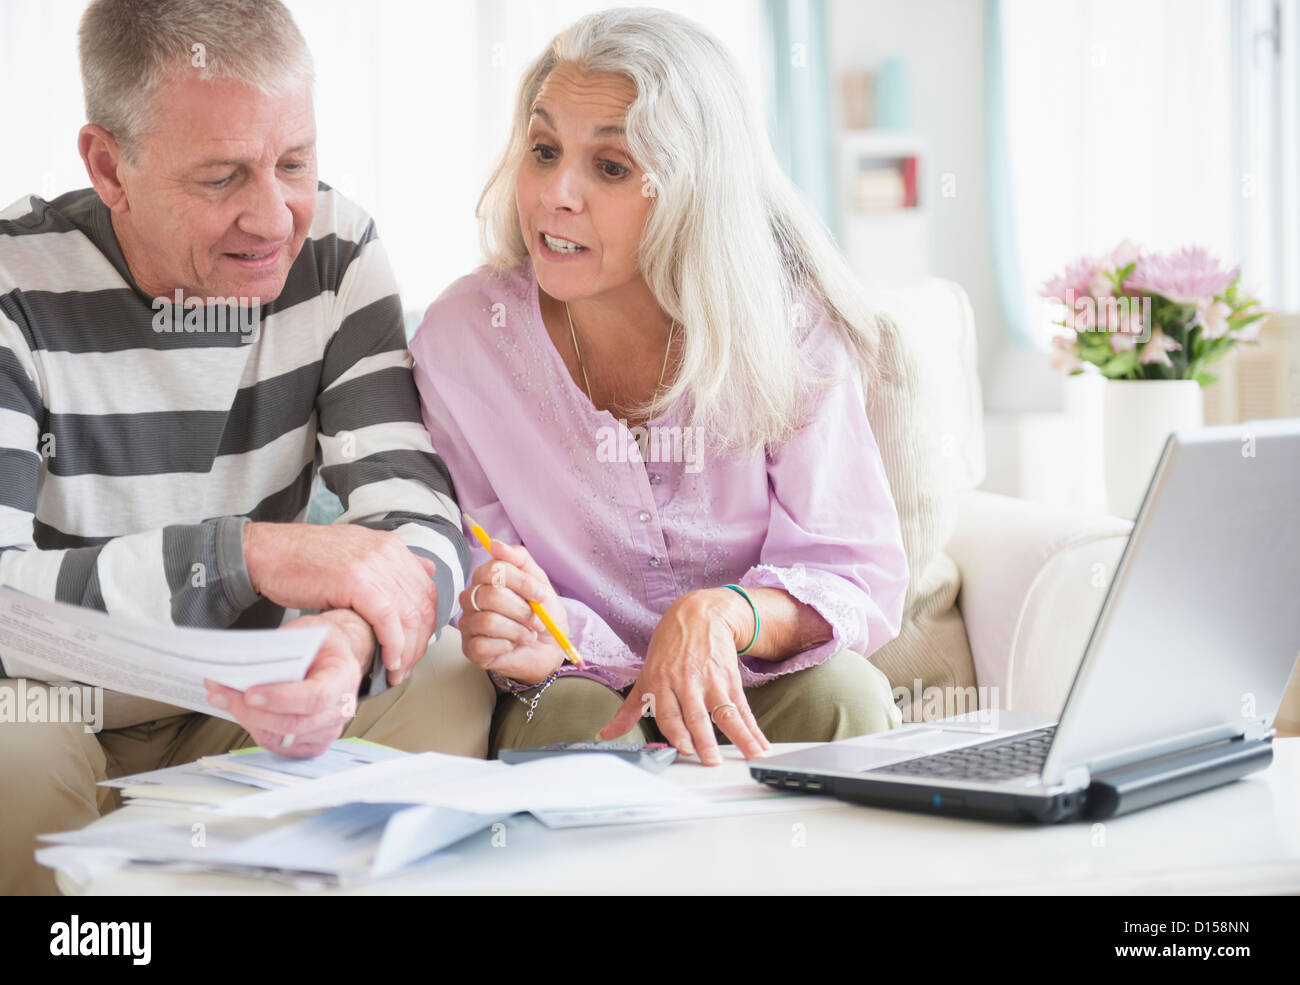 USA, New Jersey, Jersey City, couple de personnes âgées avec ordinateur portable et documents de séance dans la salle de séjour Banque D'Images